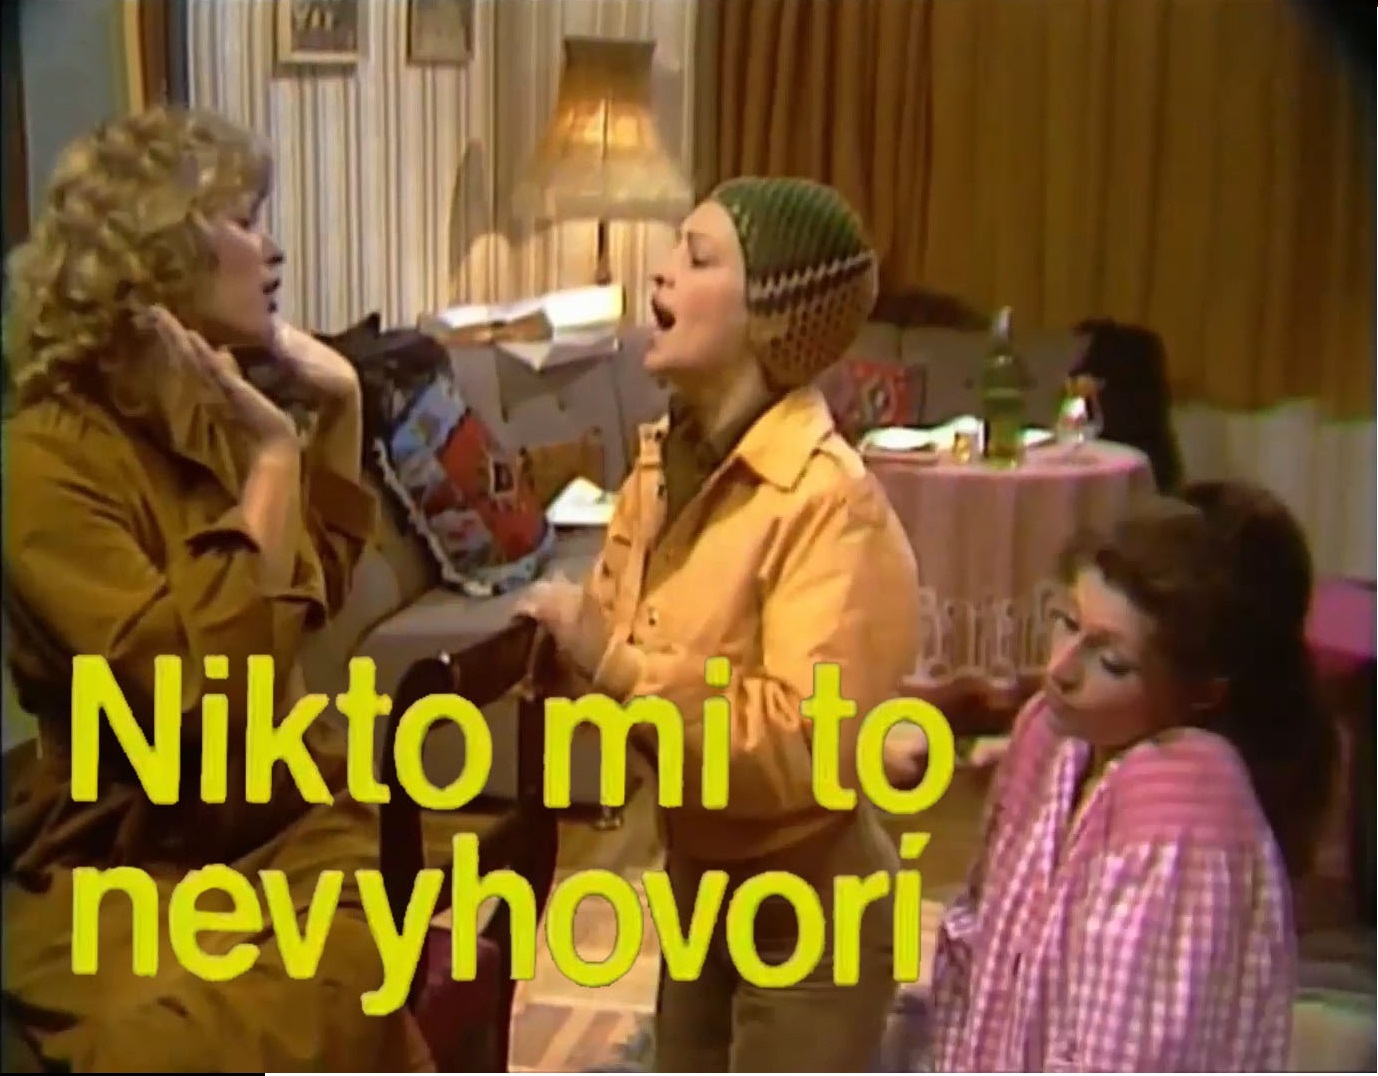 Stiahni si Filmy CZ/SK dabing Nikto mi to nevyhovory (1981)(SK)[TvRip]